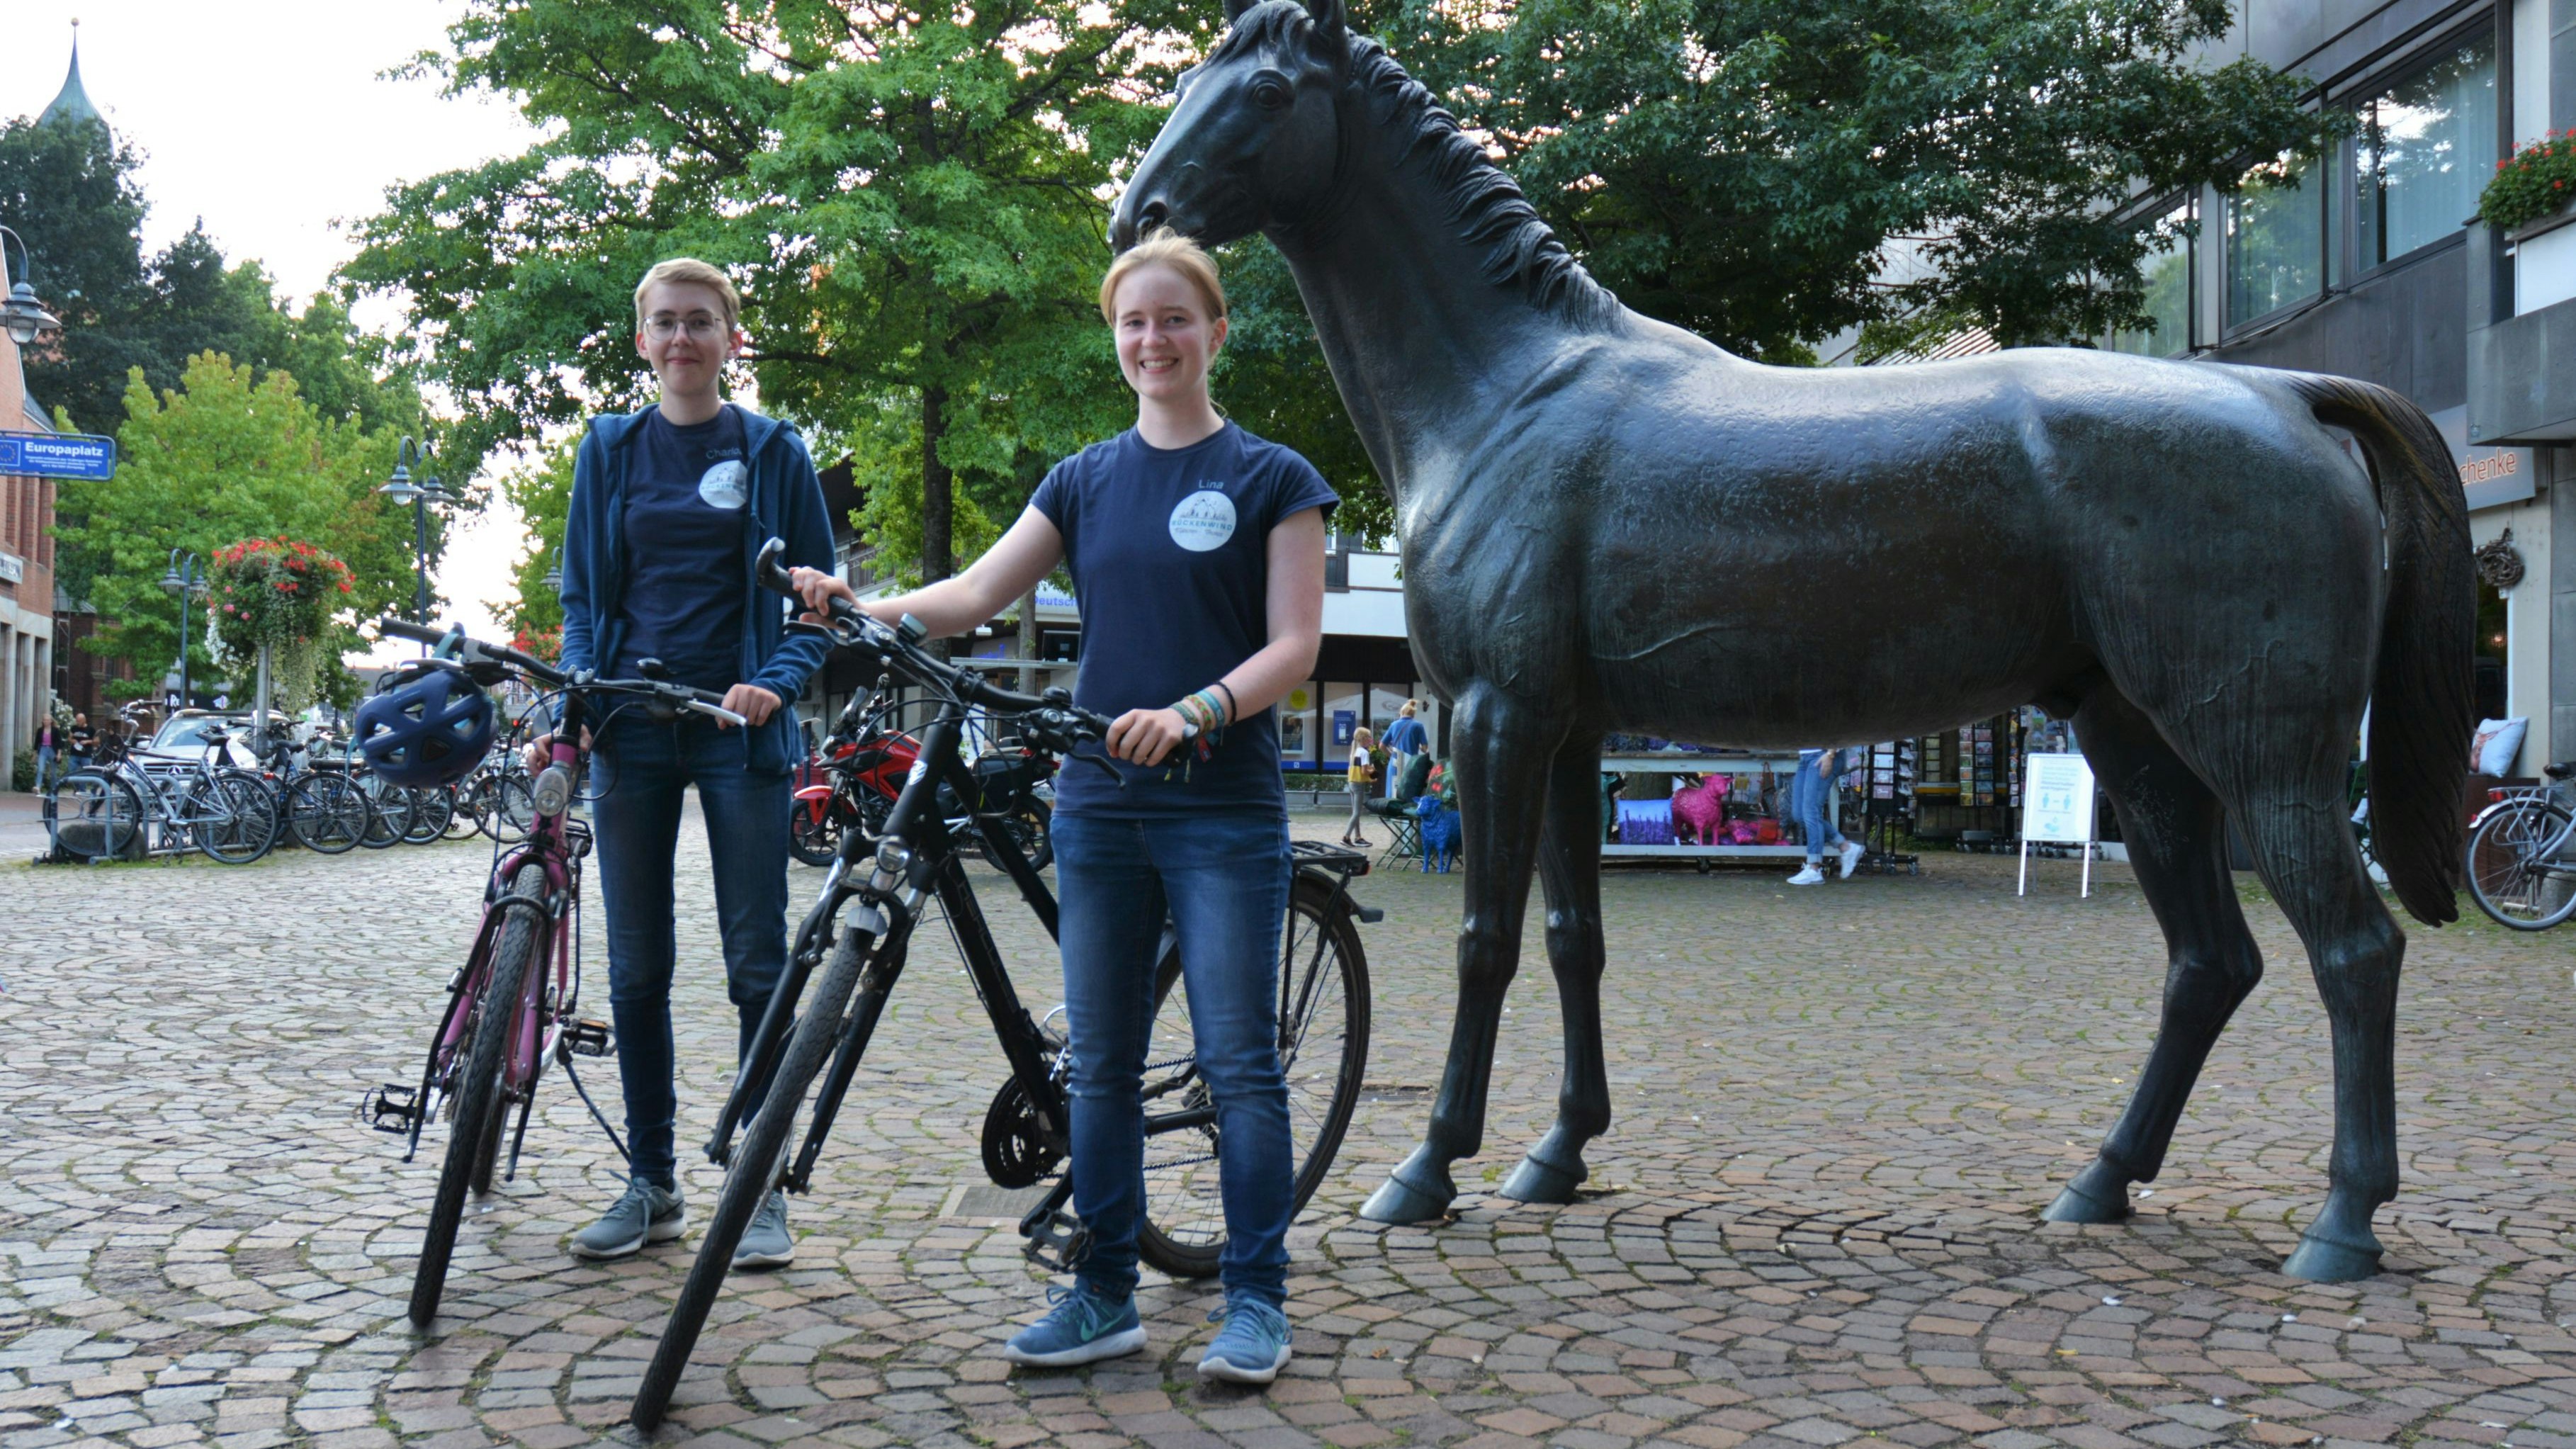 11 Tage, 900 Kilometer, 3 Kilogramm Müsli: Auf der Strecke von München nach Hamburg haben (von links) Charlotte Havers und Lina Kröger viel erlebt. Foto: E. Wenzel